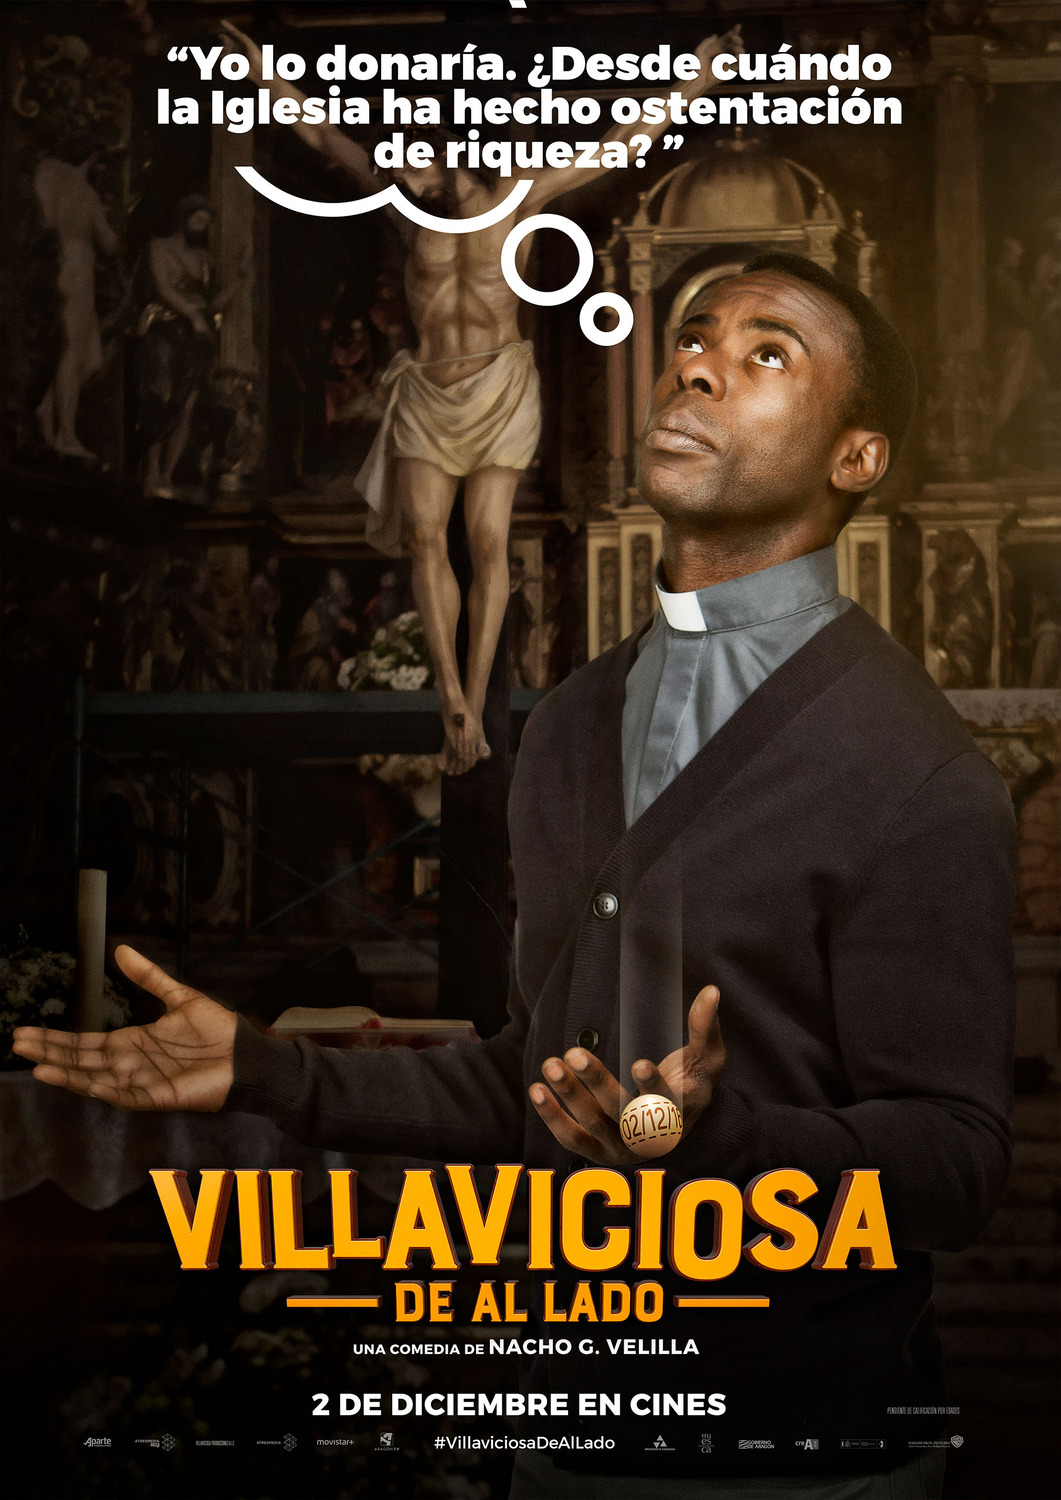 Extra Large Movie Poster Image for Villaviciosa de al lado (#7 of 8)